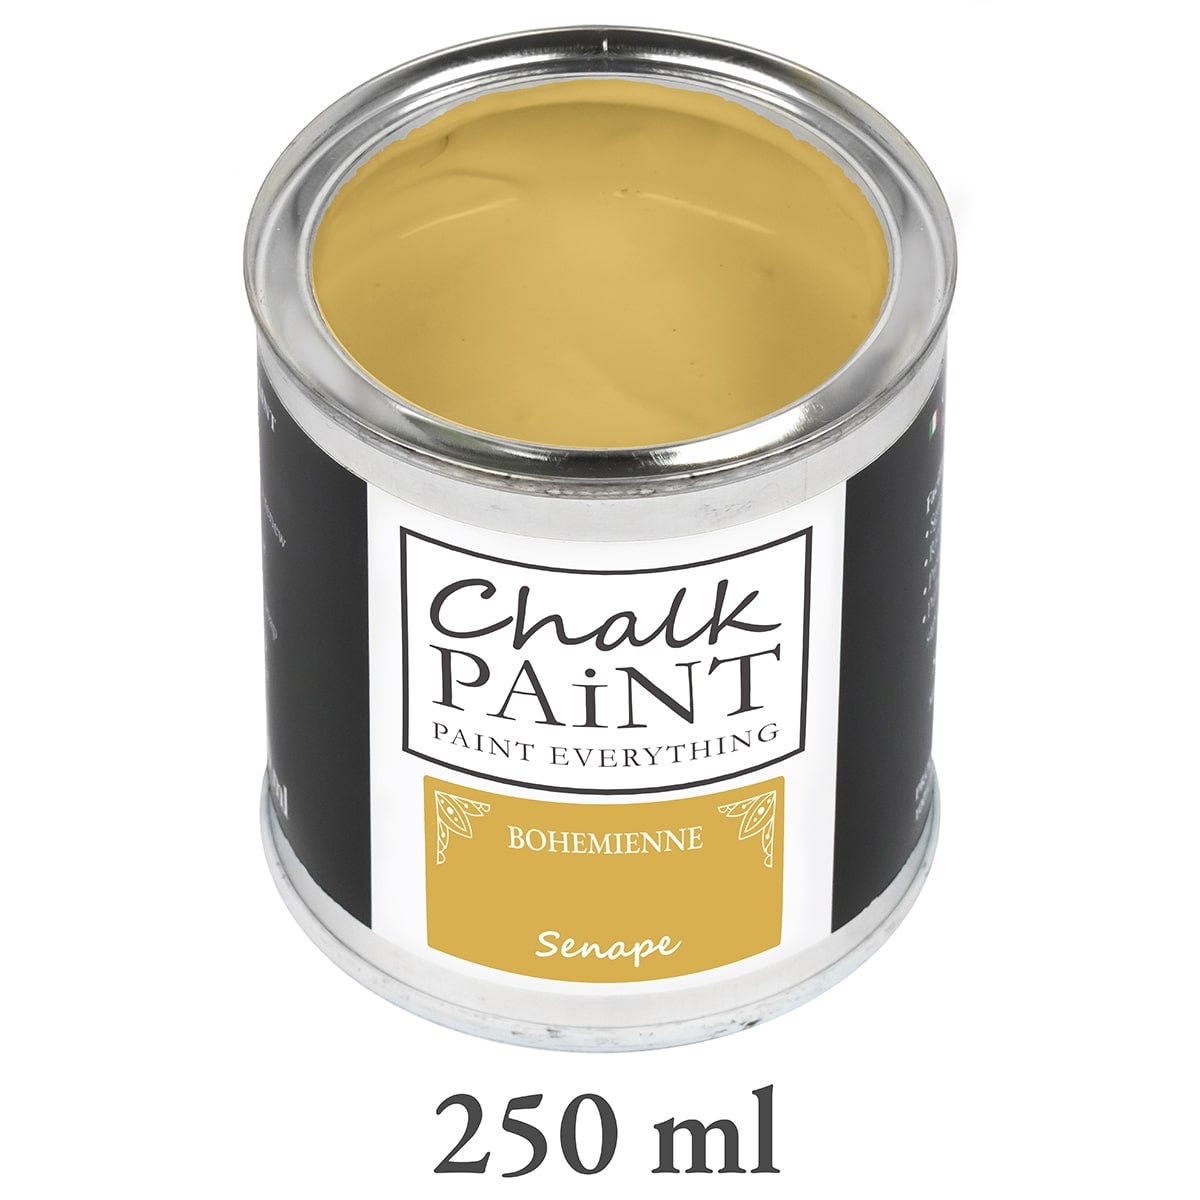 Peinture à la craie extra mate Chalk Paint Everything® - Repeint les meubles,  les murs et les objets sans ponçage - Senape 250 ml